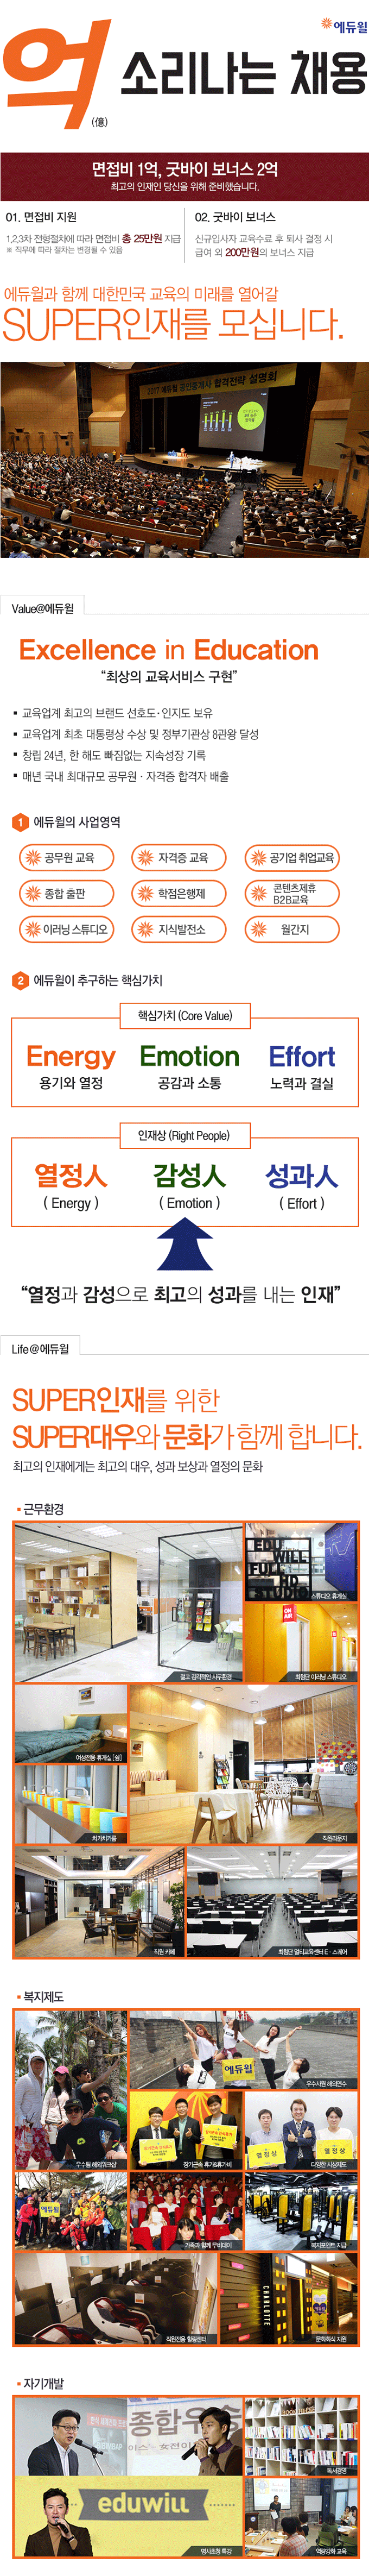 ㈜에듀윌 재무팀 신입사원 채용